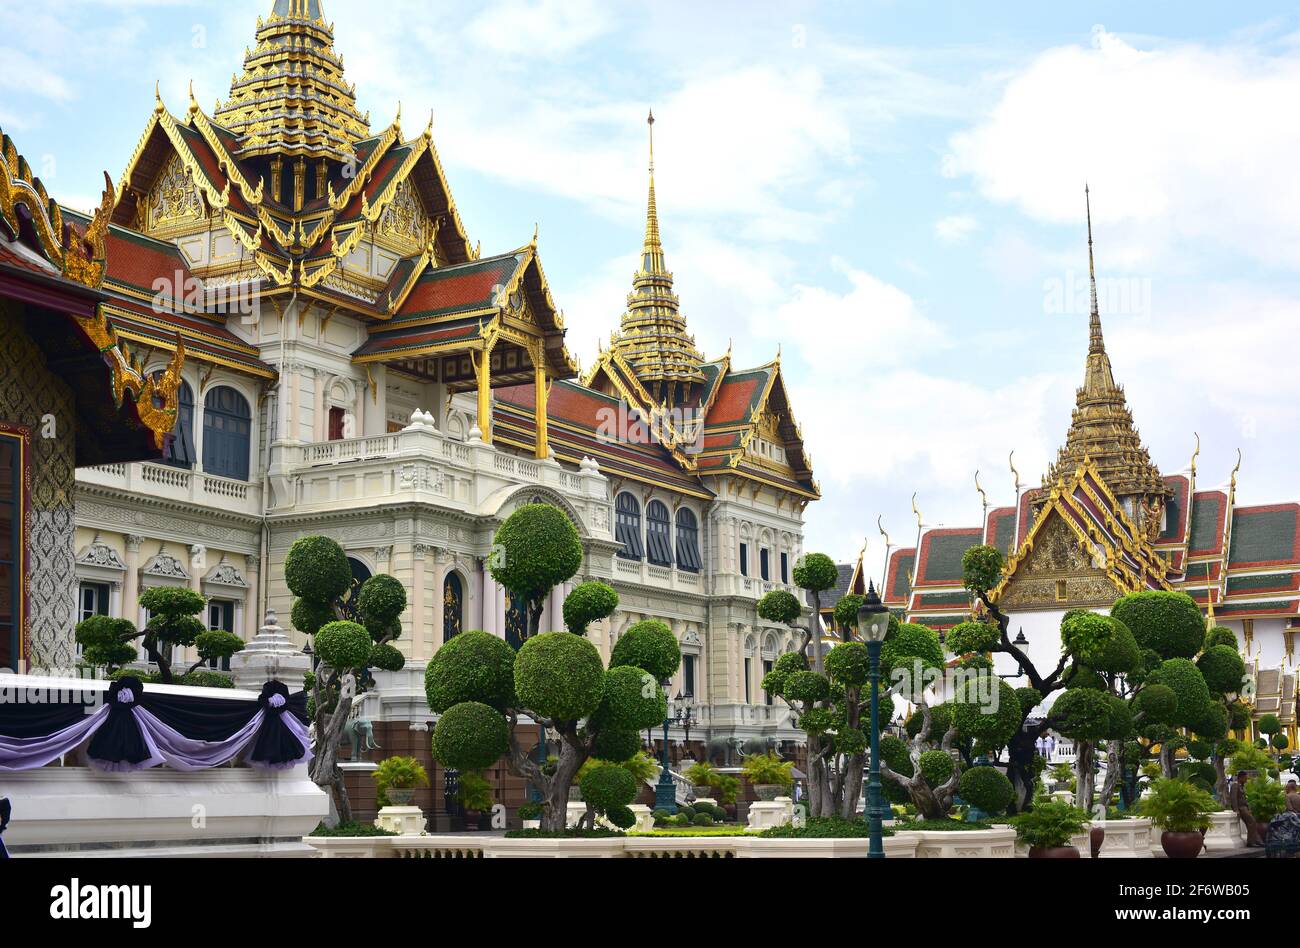 Bangkok, Phra Thinang Chakri Maha Prasat on The Grand Palace. Thailand. Stock Photo